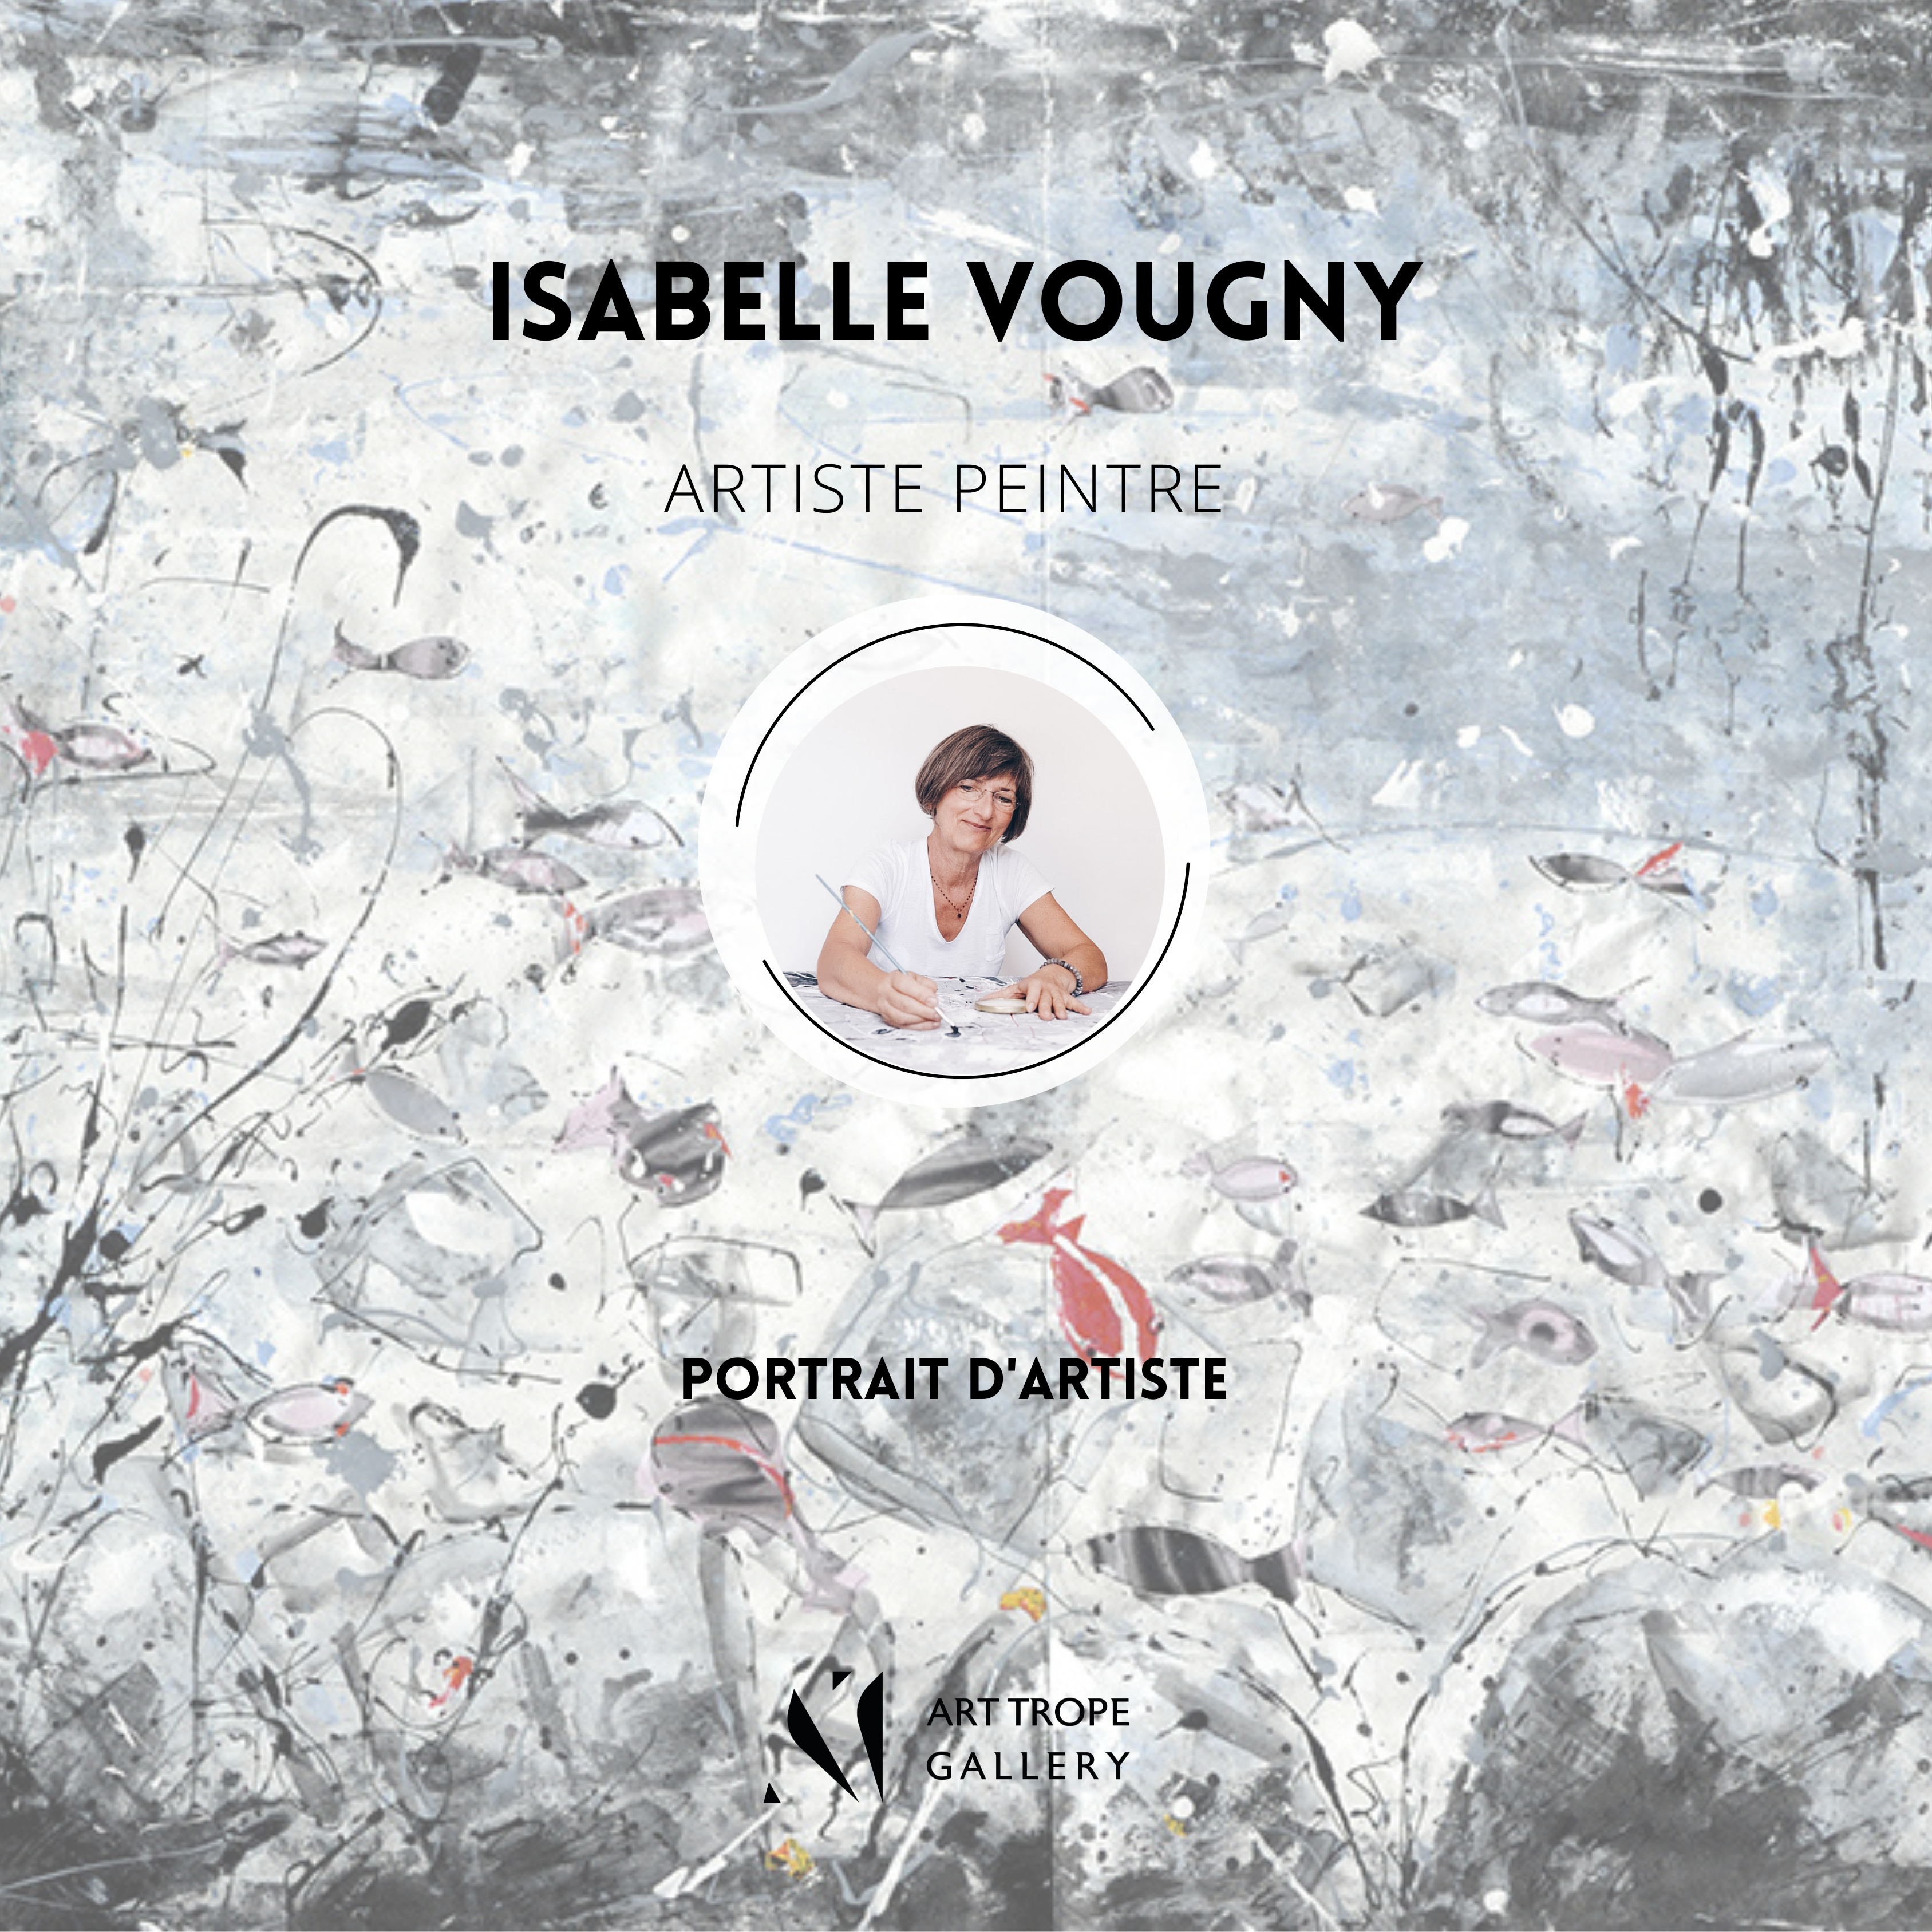 Art Trope Gallery présente le portrait de l’Artiste Peintre Isabelle Vougny !